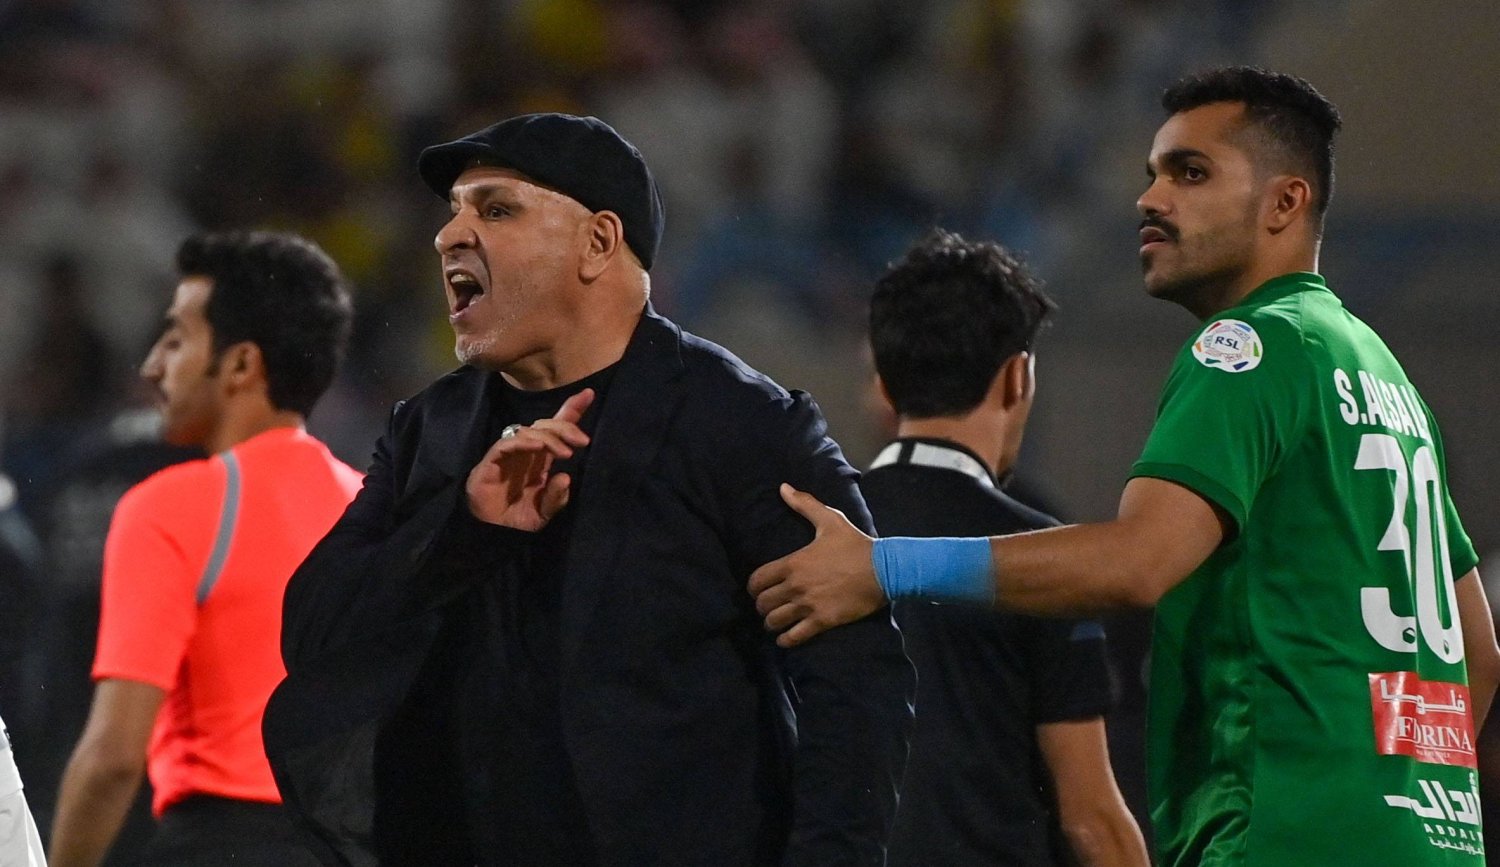 نور الدين بن زكري مدرب فريق الأخدود في لحظة اعتراض على حكم المباراة (تصوير: علي خمج)